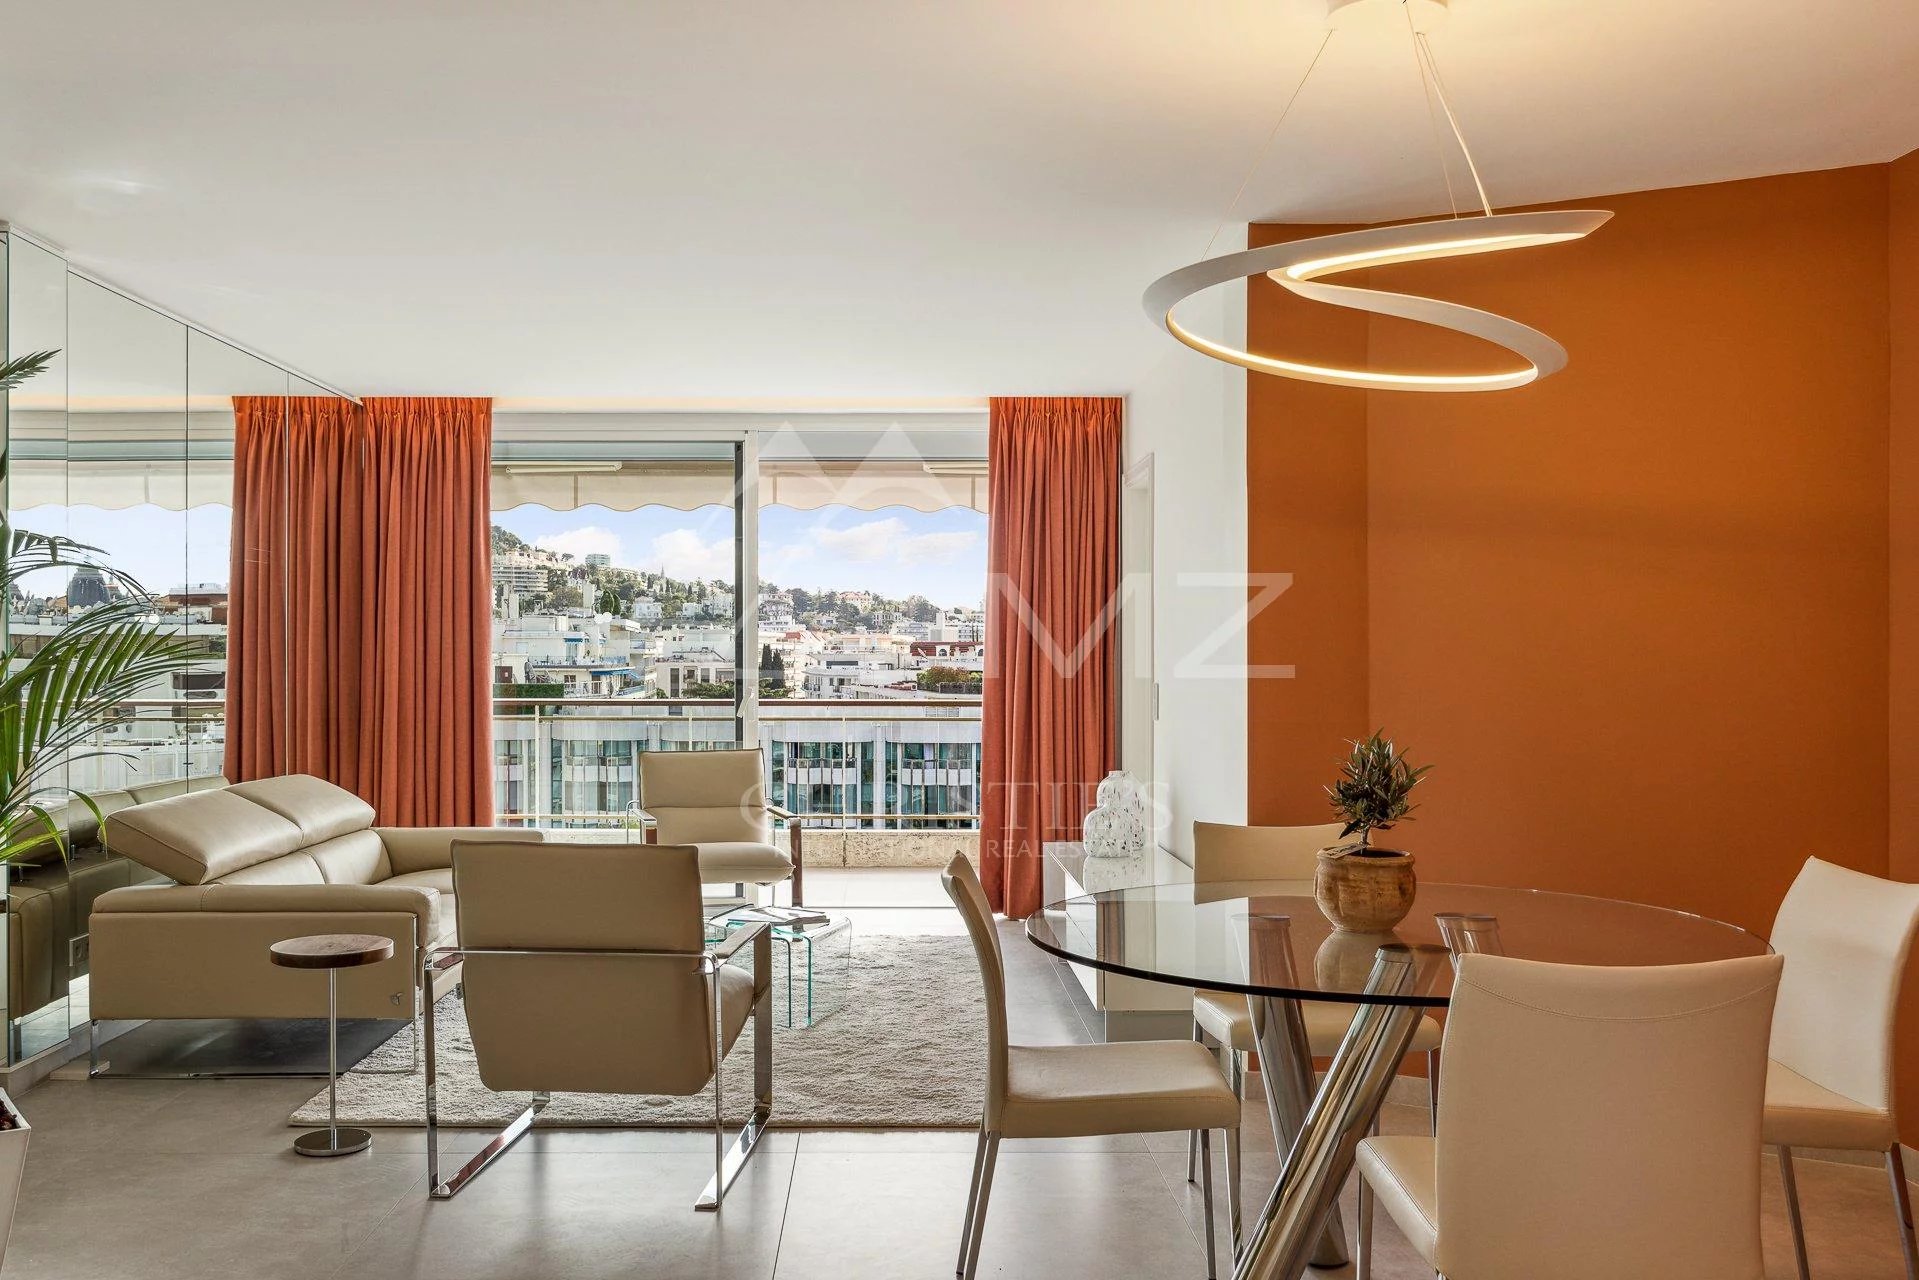 Cannes Croisette - Grand Hôtel - 3 Pièces vue mer